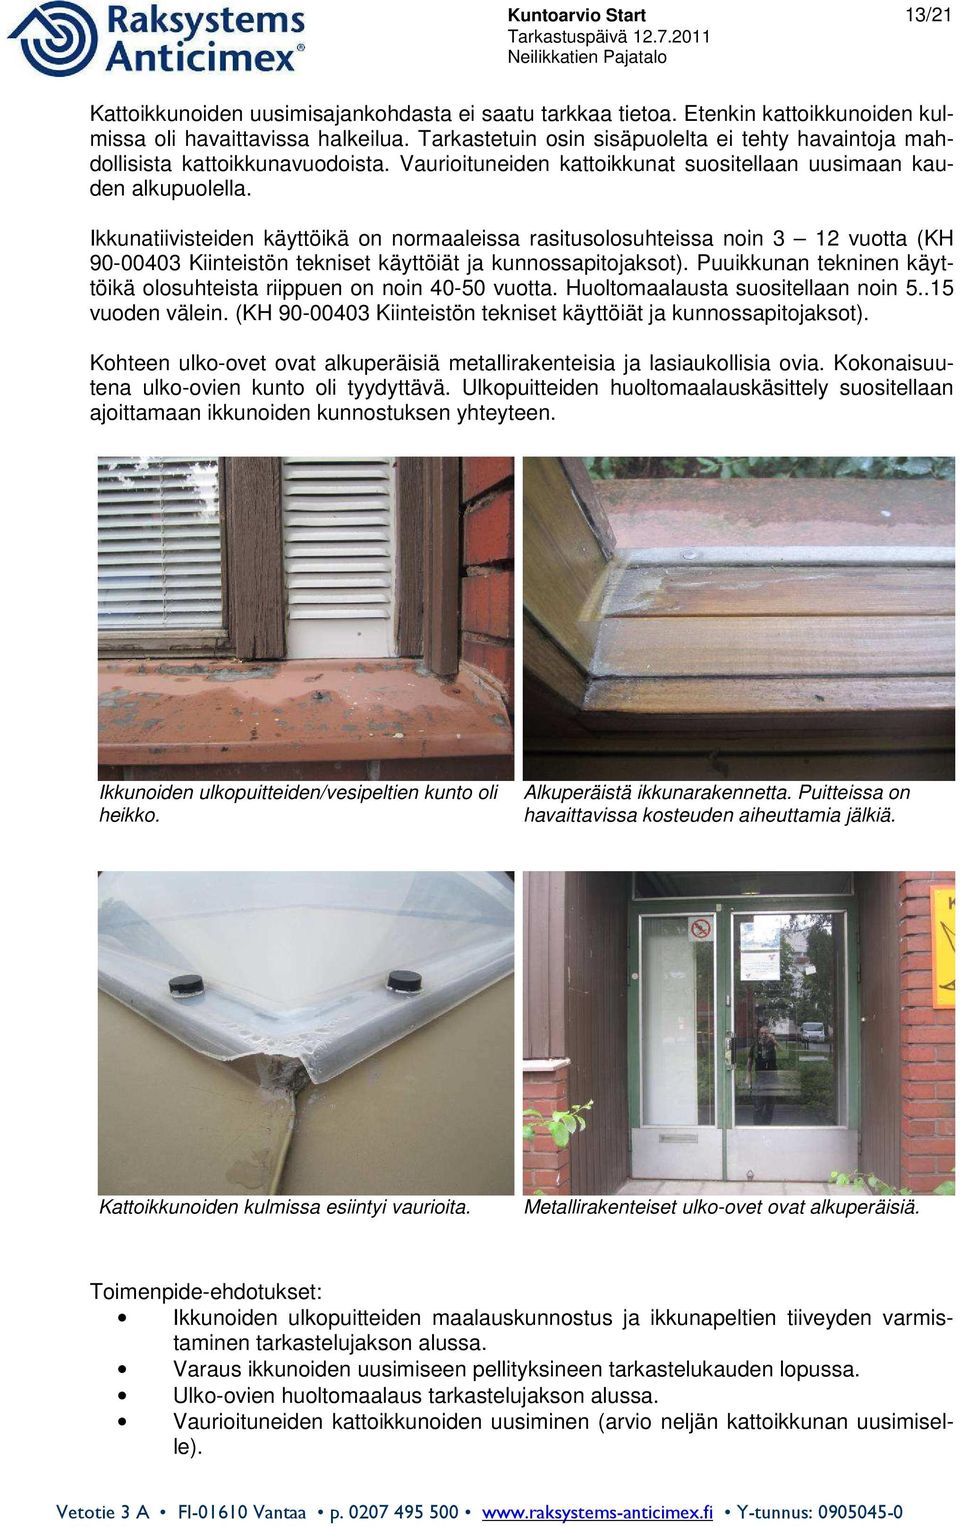 Ikkunatiivisteiden käyttöikä on normaaleissa rasitusolosuhteissa noin 3 12 vuotta (KH 90-00403 Kiinteistön tekniset käyttöiät ja kunnossapitojaksot).